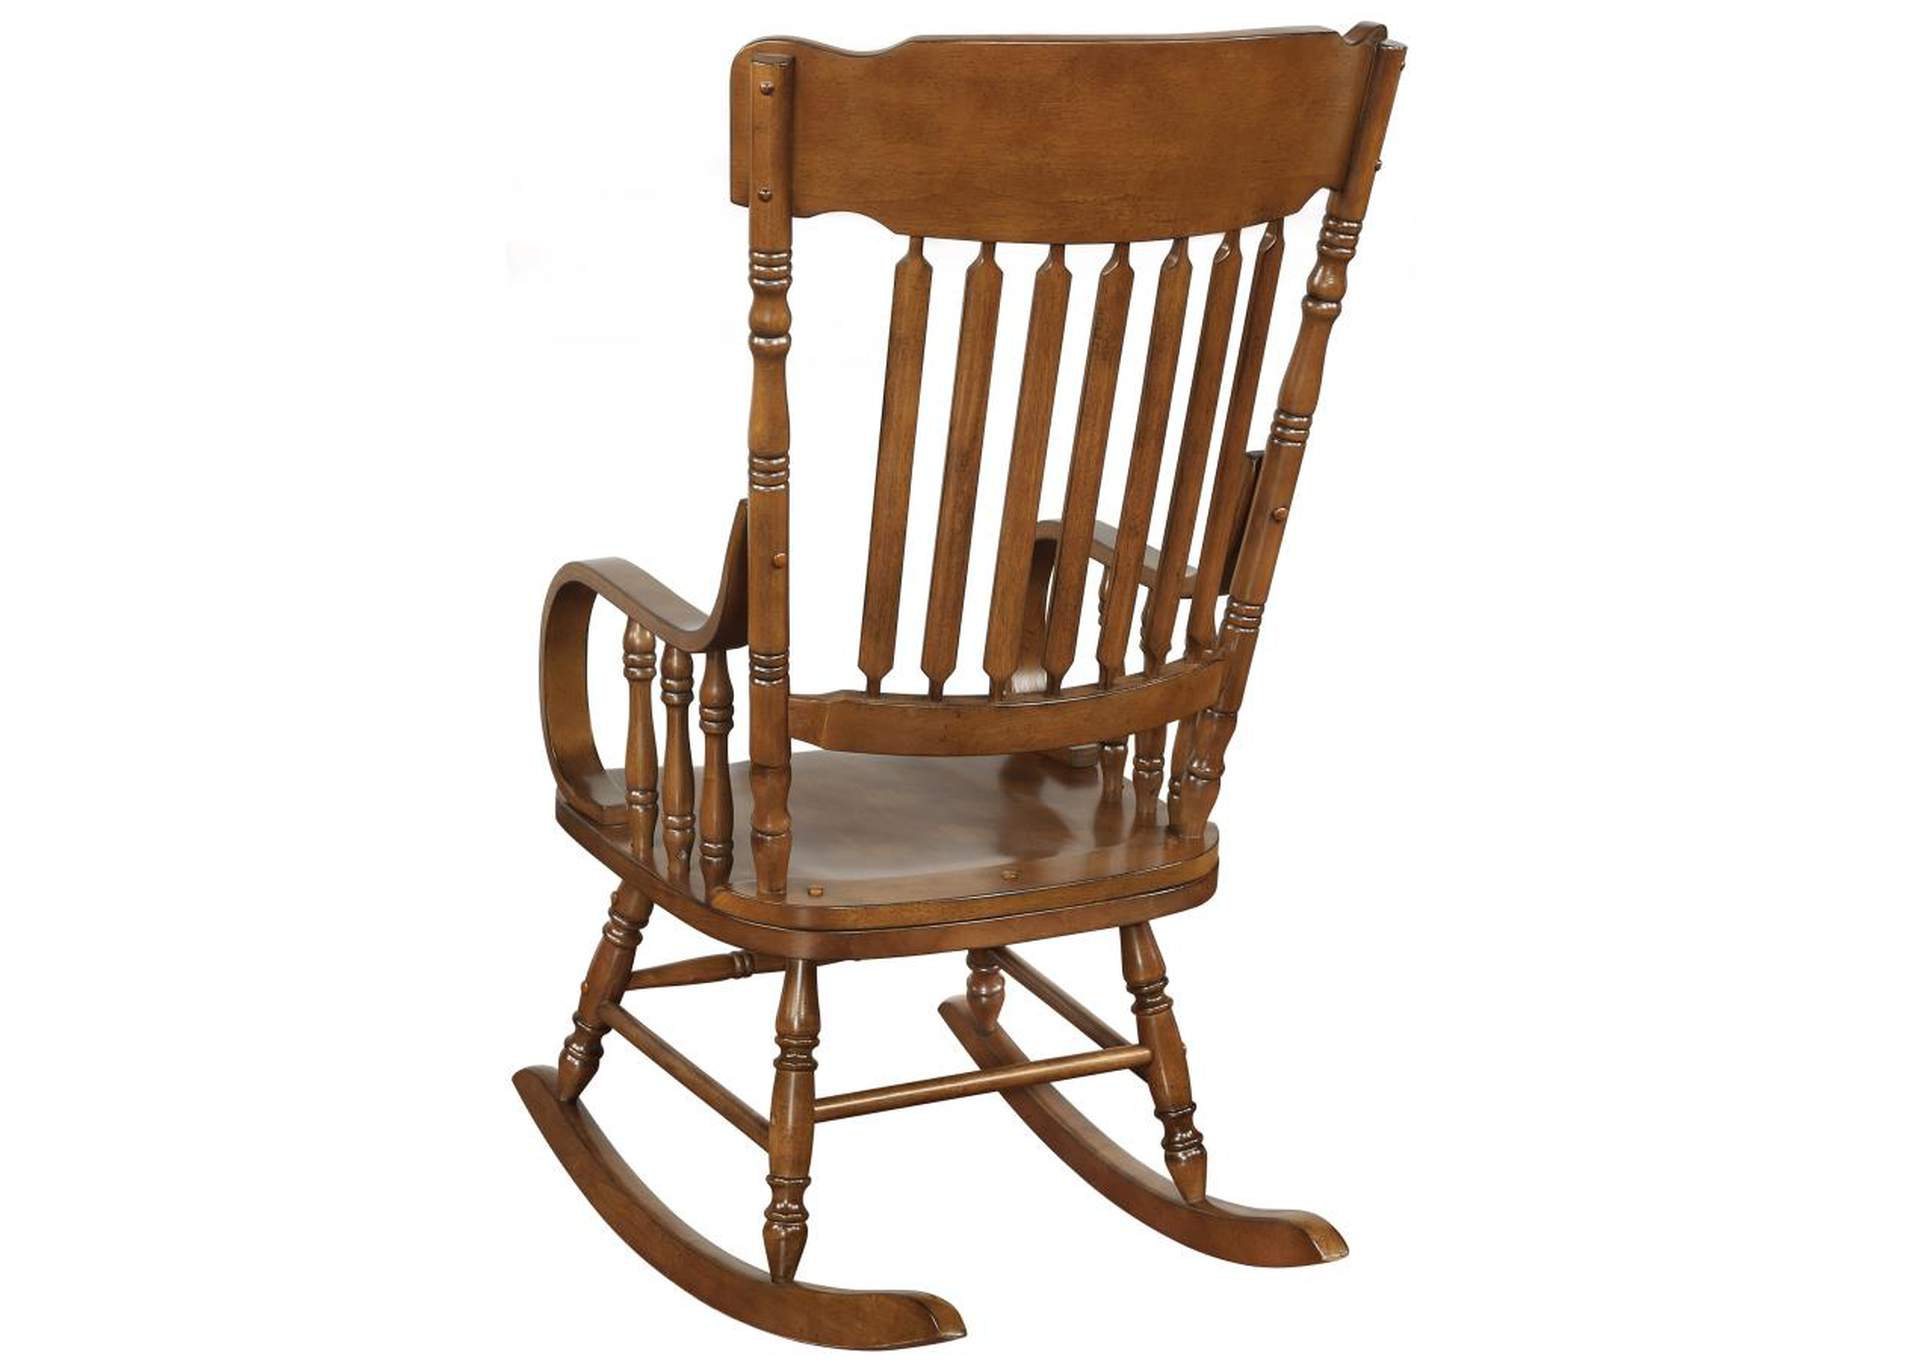 Sara Back Rocking Chair Warm Brown,Coaster Furniture